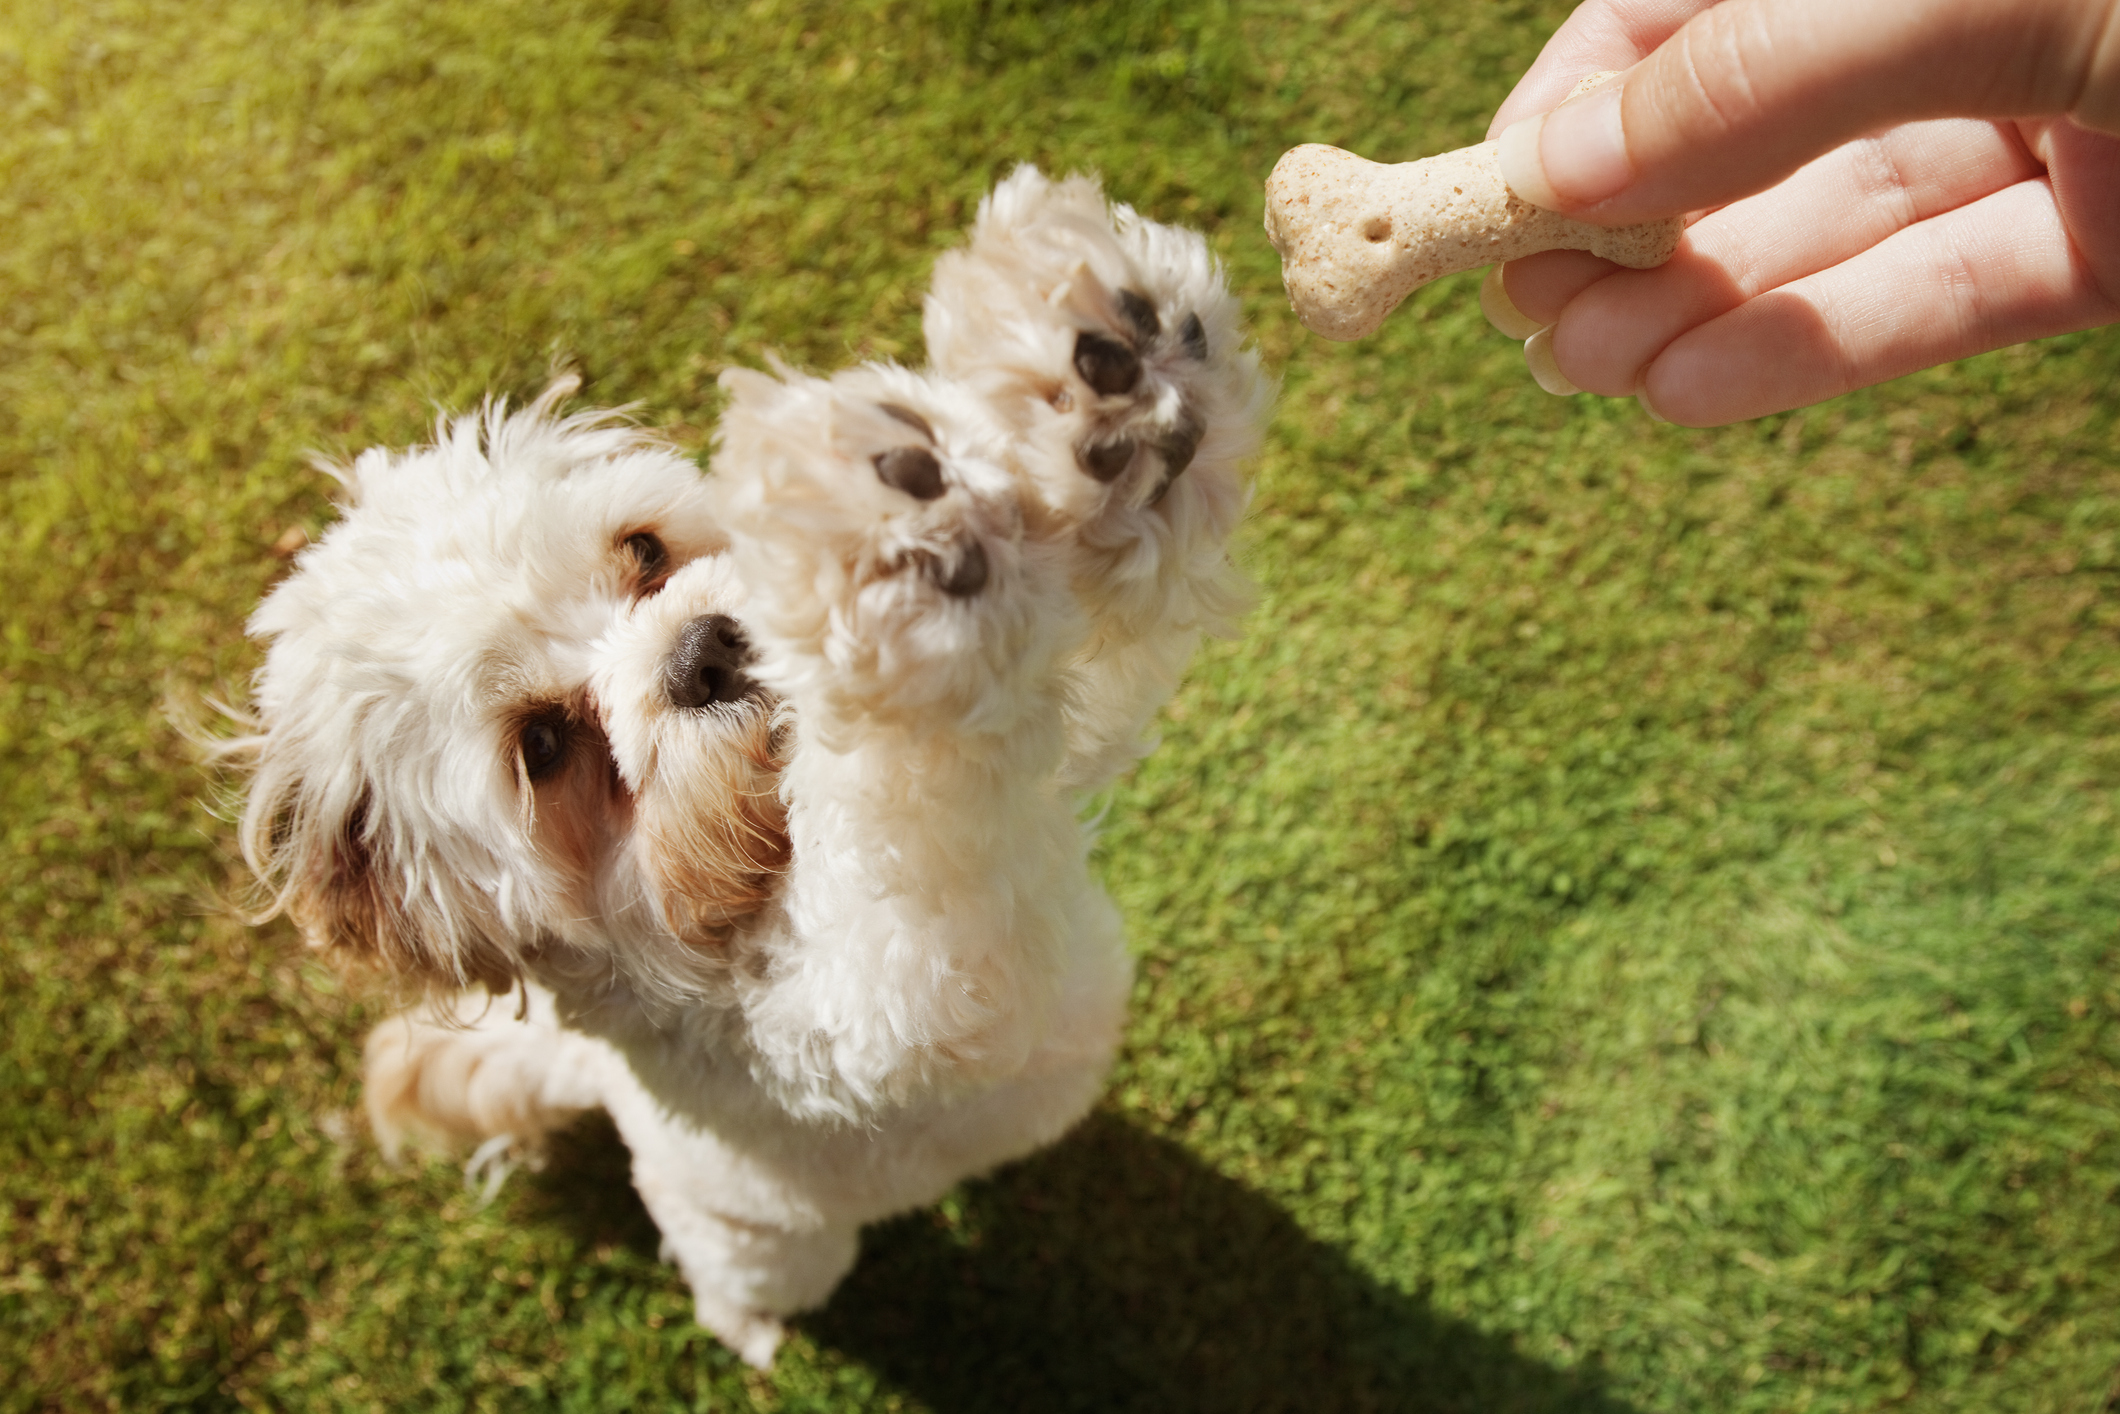 Los perros responde manera amigable cuando una persona les consigue alimento y trata bien a sus dueños (Getty Images)